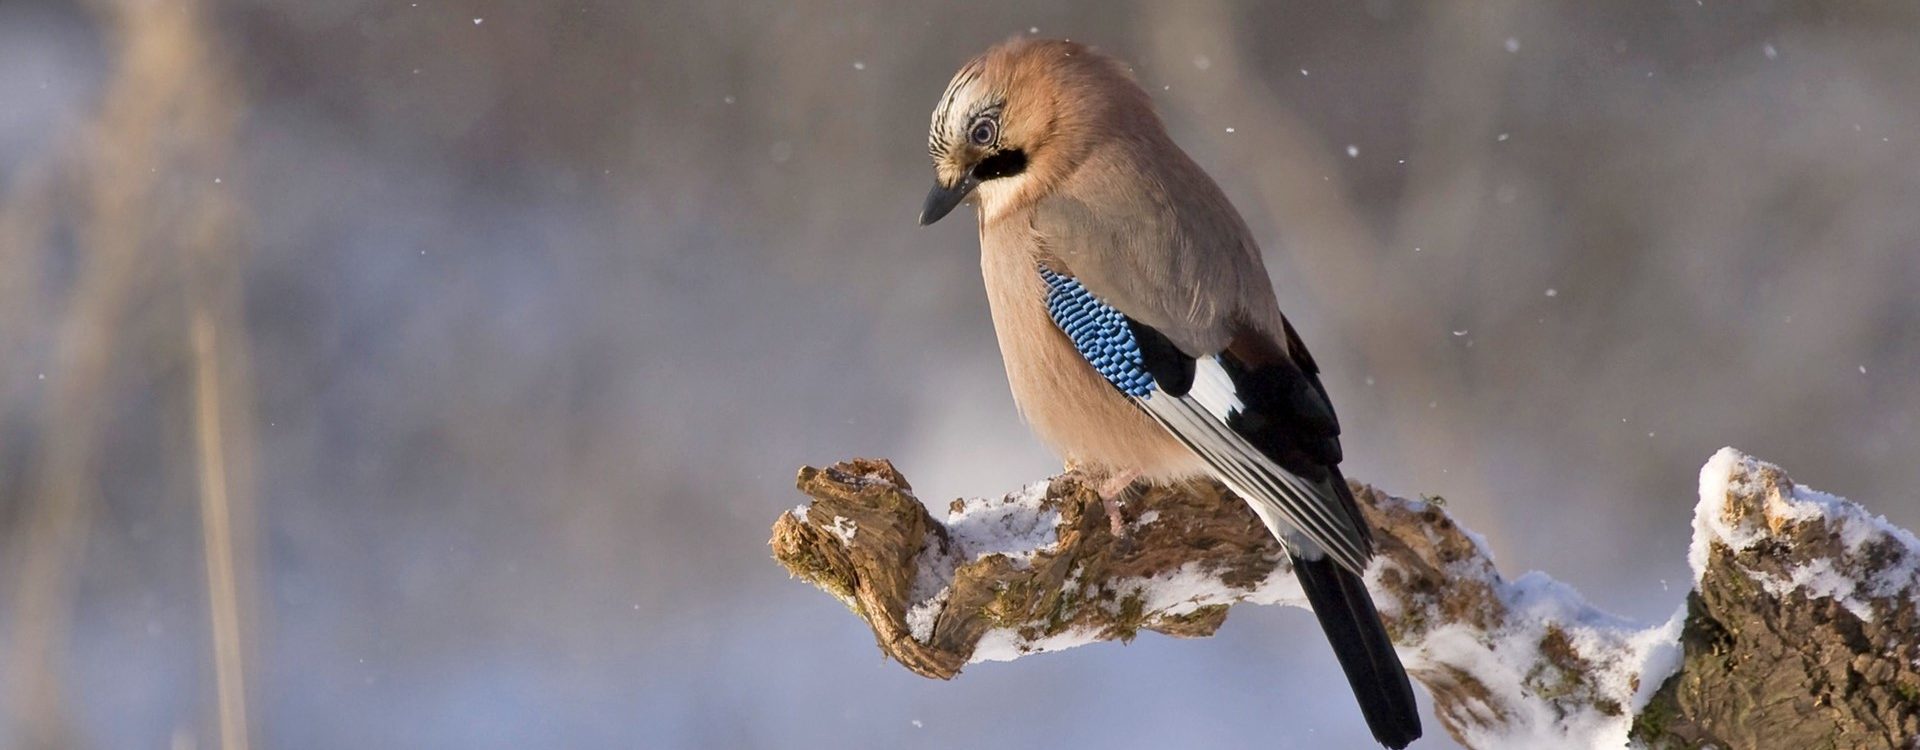 Bird on snowy branch